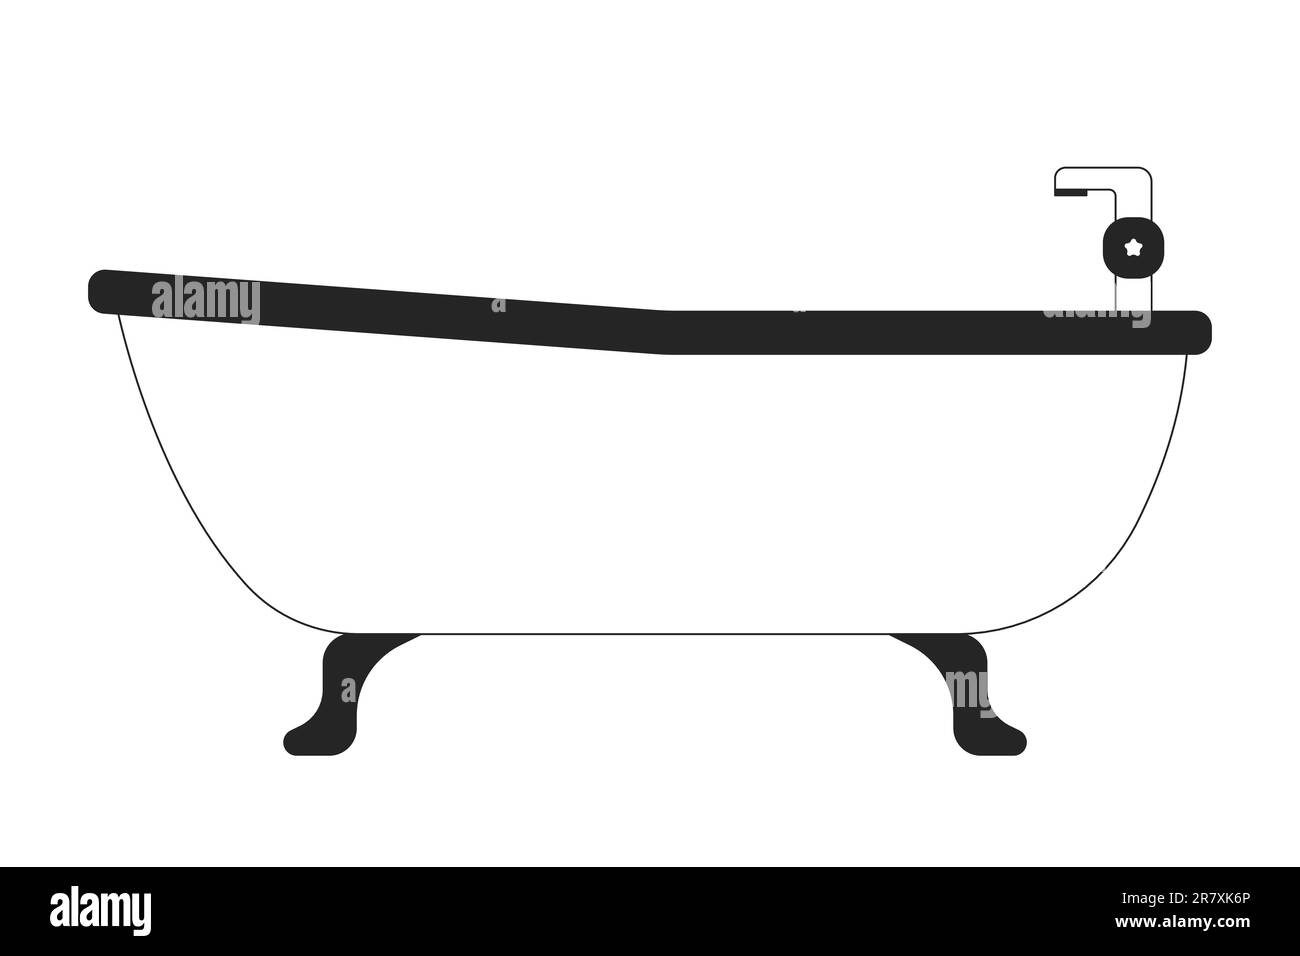 Bathtub with faucet in bathroom line art vector cartoon icon Stock Vector